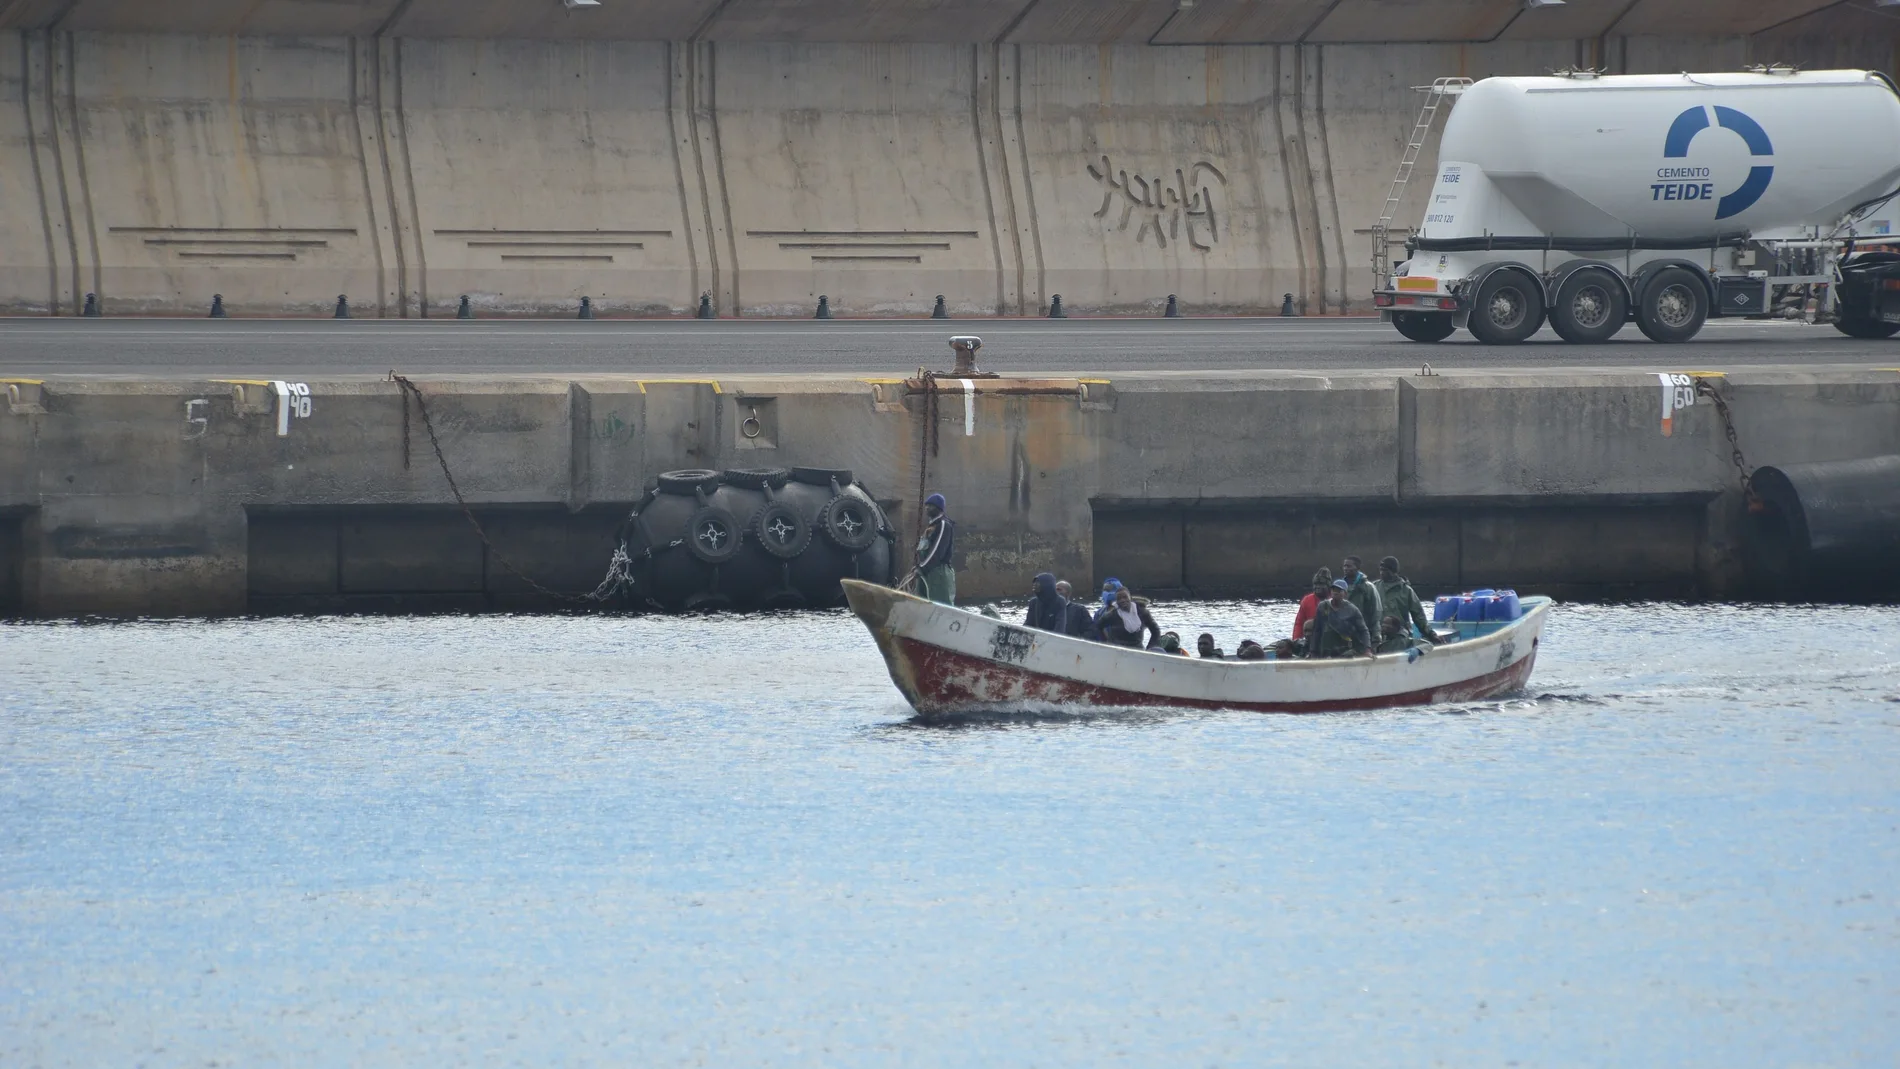 - Imagen de la llegada al puerto de la Estaca, en la isla de El Hierro, de un cayuco con 28 personas a bordoo. EFE/Gelmert Finol